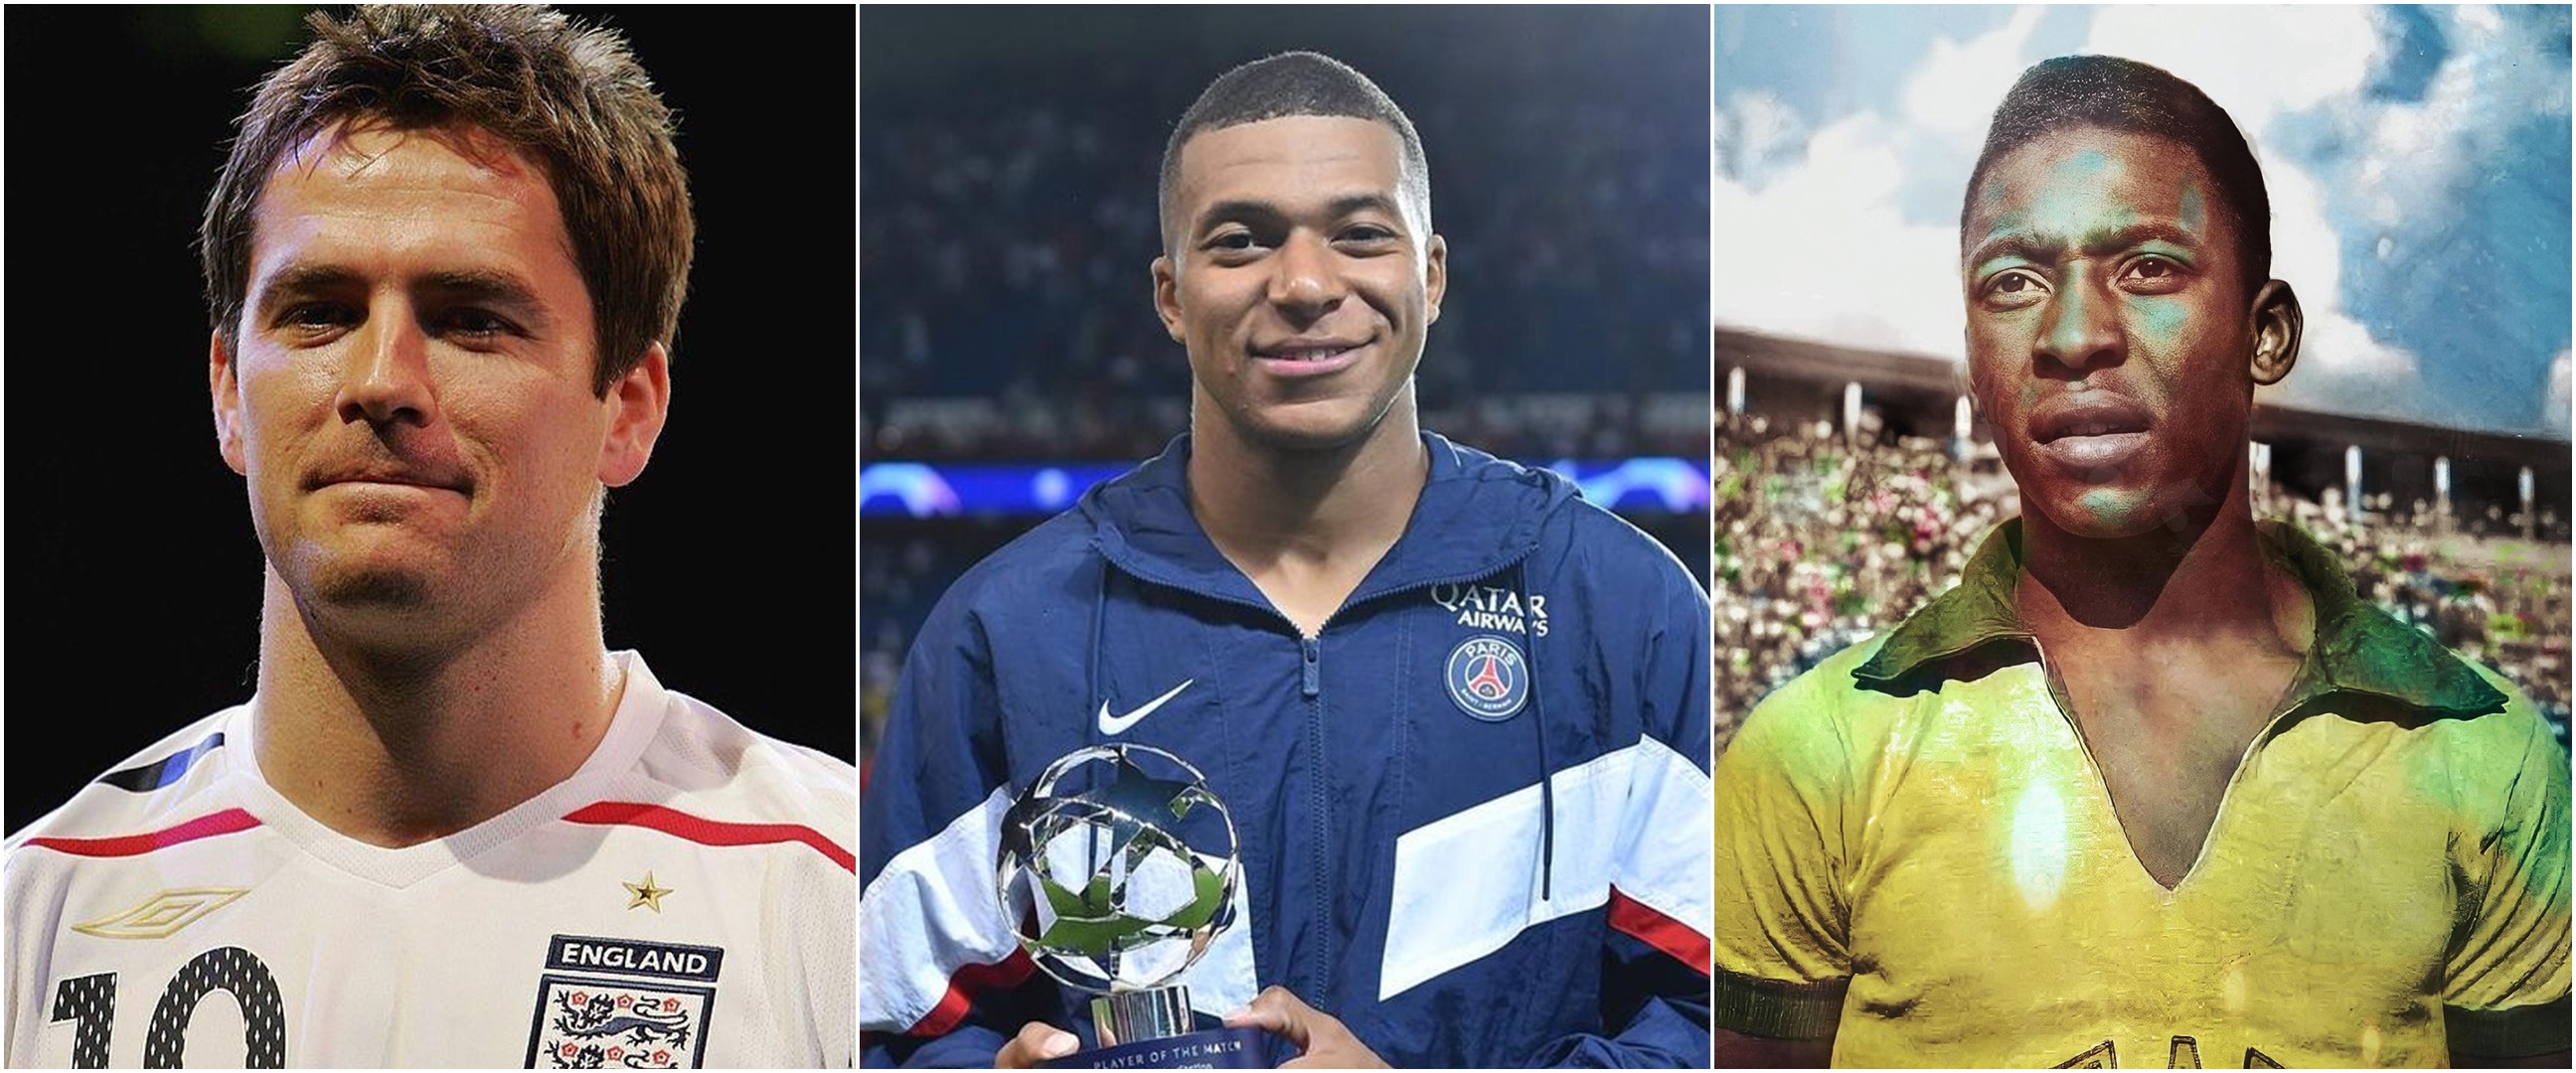 Deretan peraih Pemain Muda Terbaik di Piala Dunia dari masa ke masa